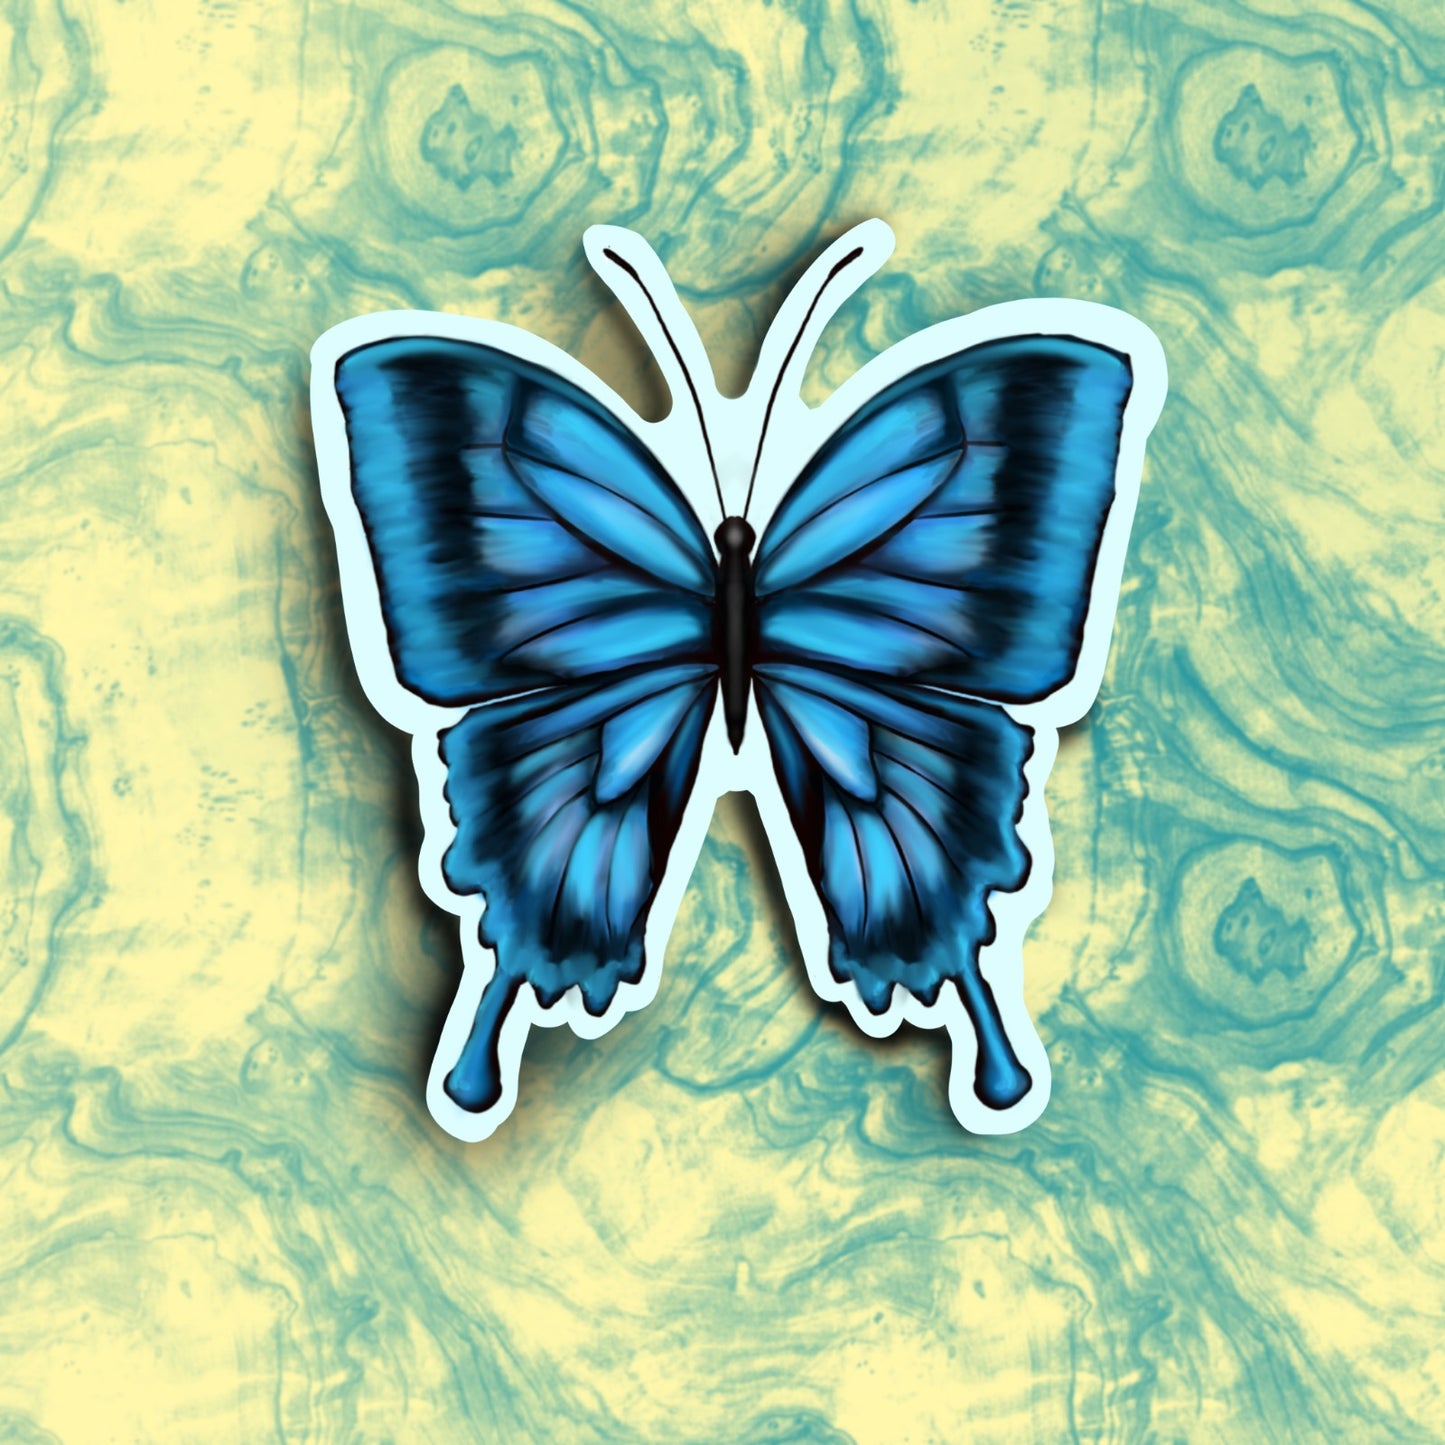 "Butterfly" waterproof sticker